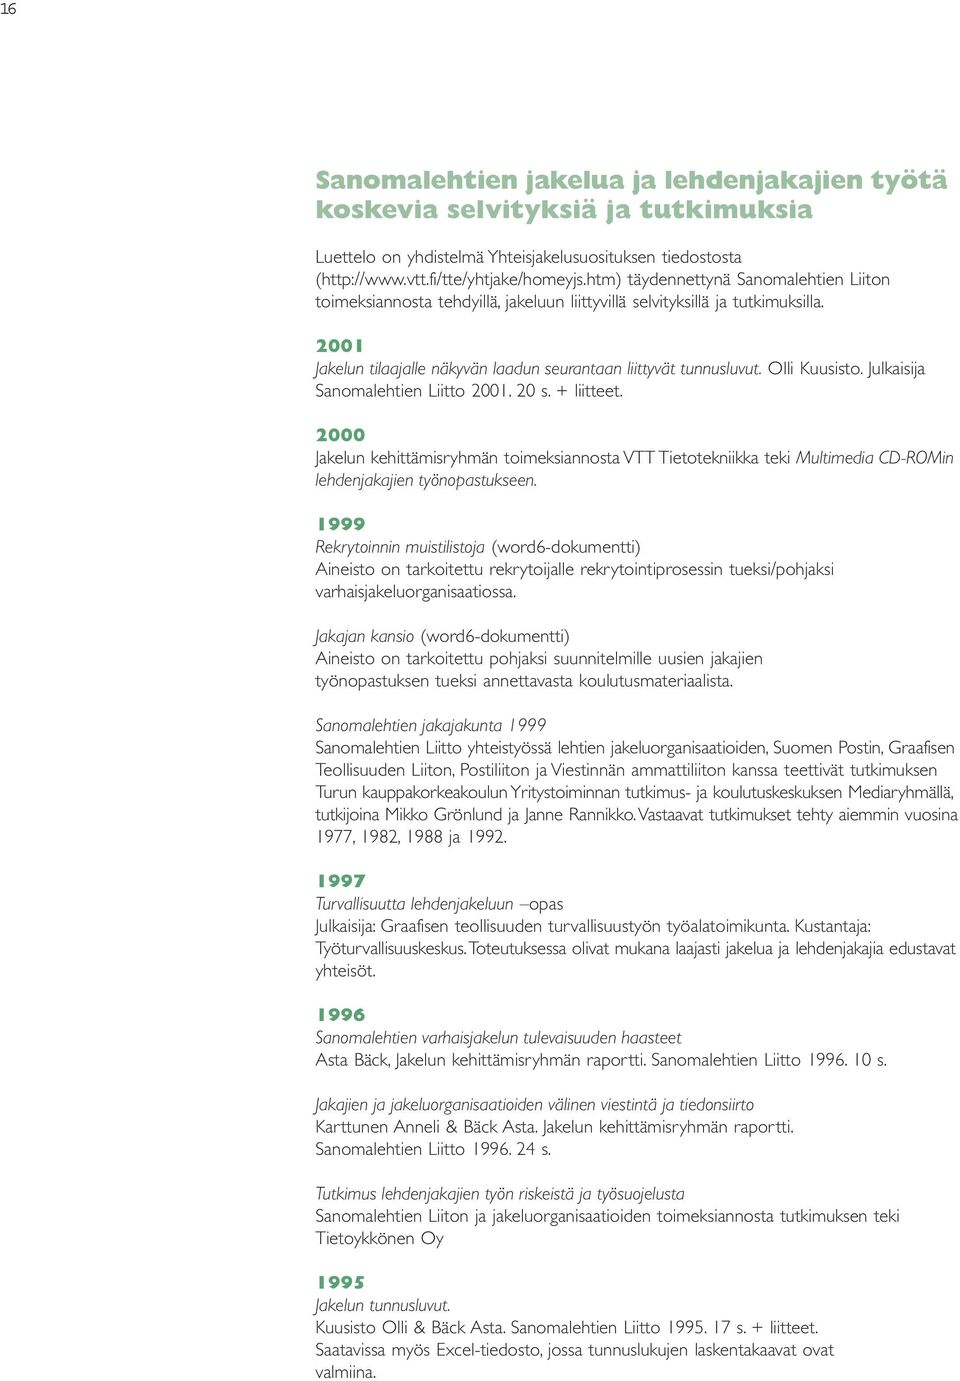 Olli Kuusisto. Julkaisija Sanomalehtien Liitto 2001. 20 s. + liitteet. 2000 Jakelun kehittämisryhmän toimeksiannosta VTT Tietotekniikka teki Multimedia CD-ROMin lehdenjakajien työnopastukseen.